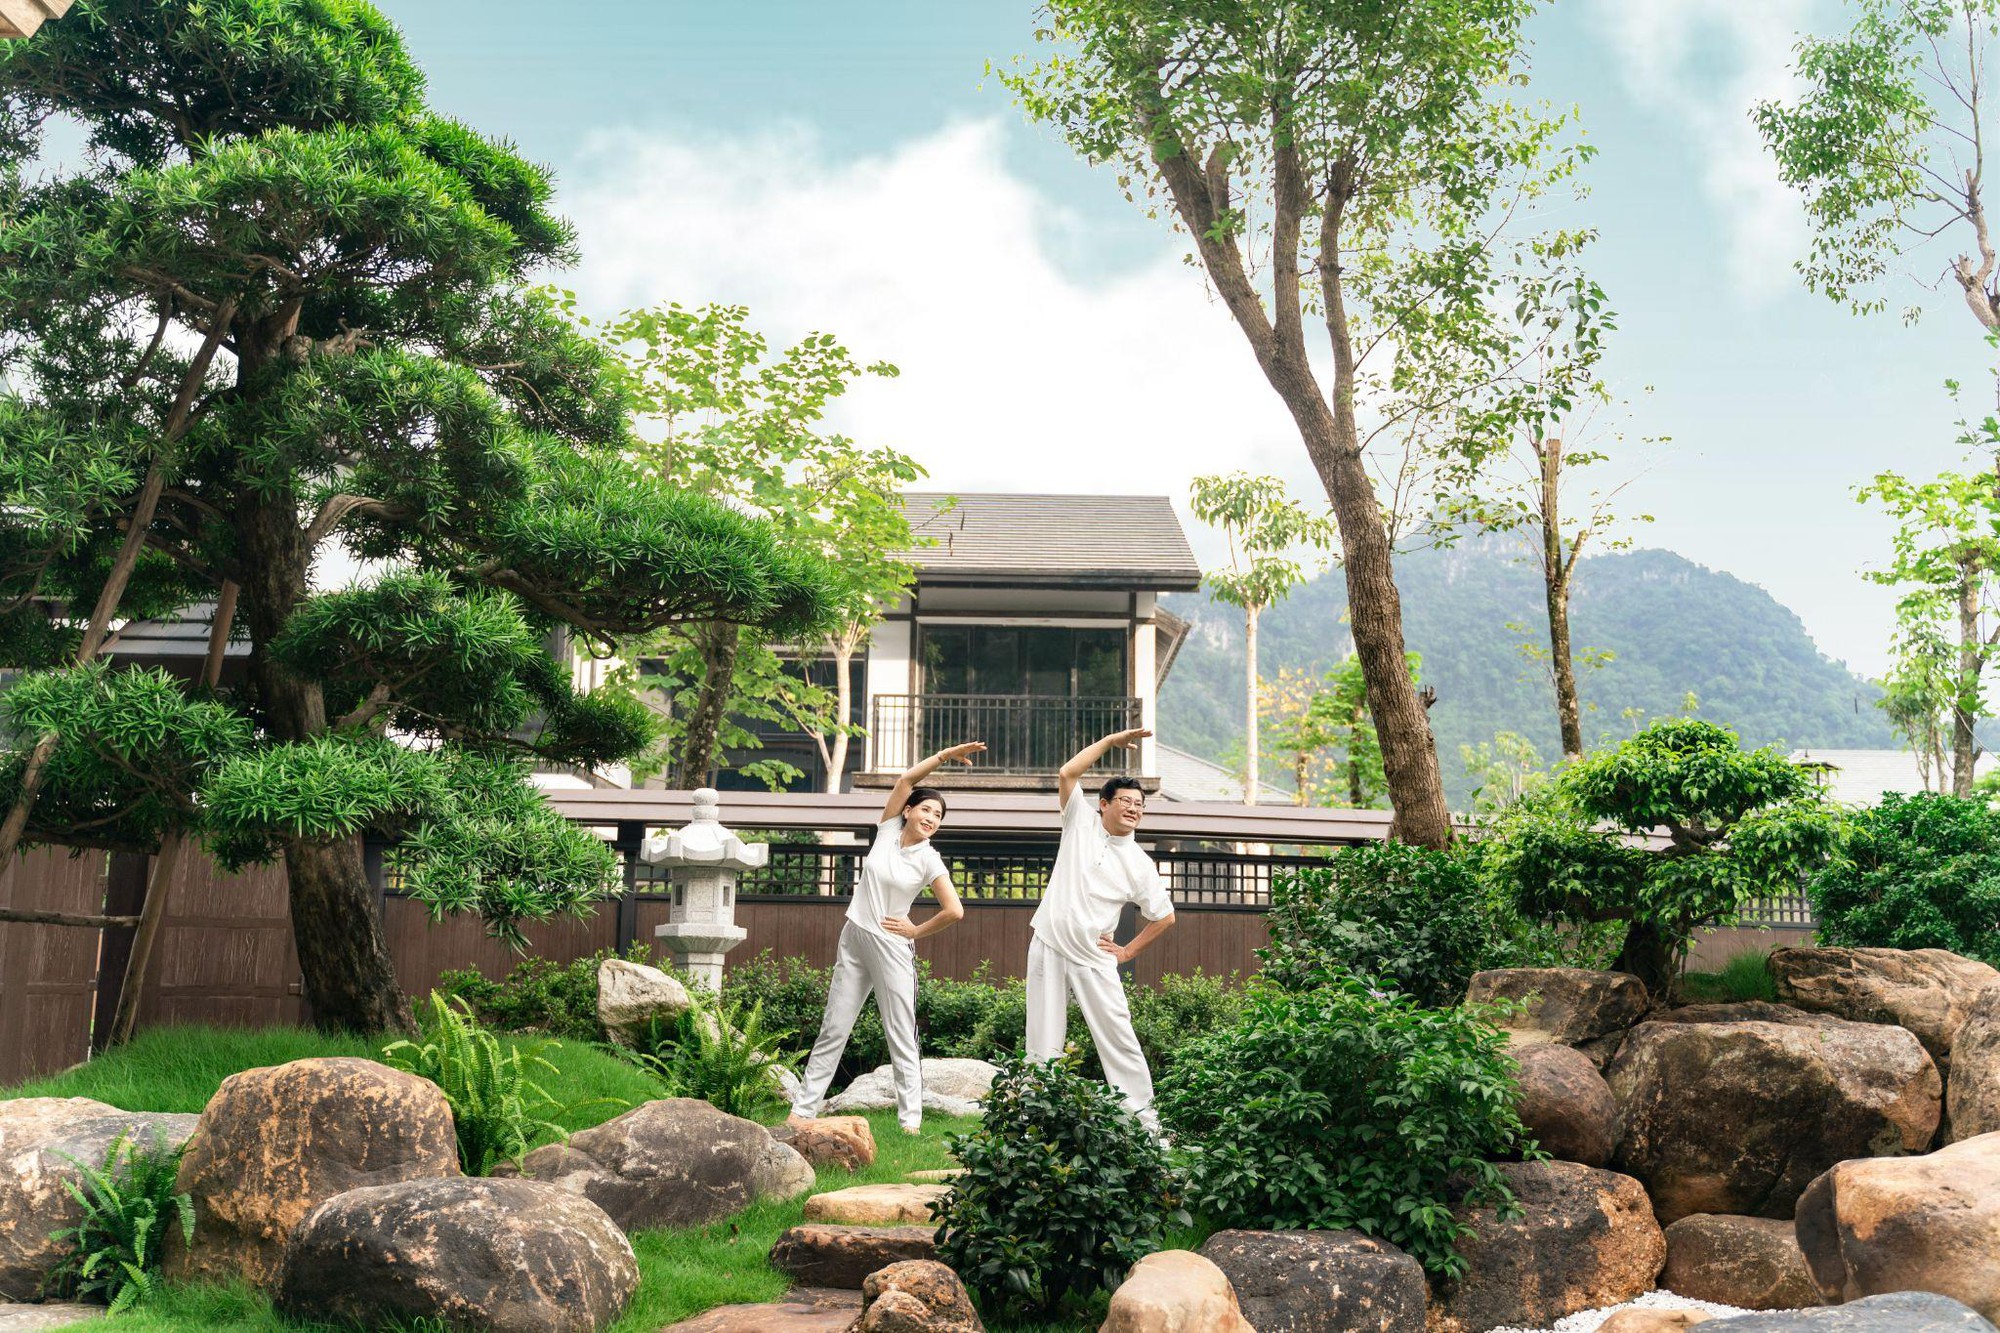 Du lịch nghỉ dưỡng tắm khoáng nóng onsen- bắt trọn xu thế thời thượng - Ảnh 6.